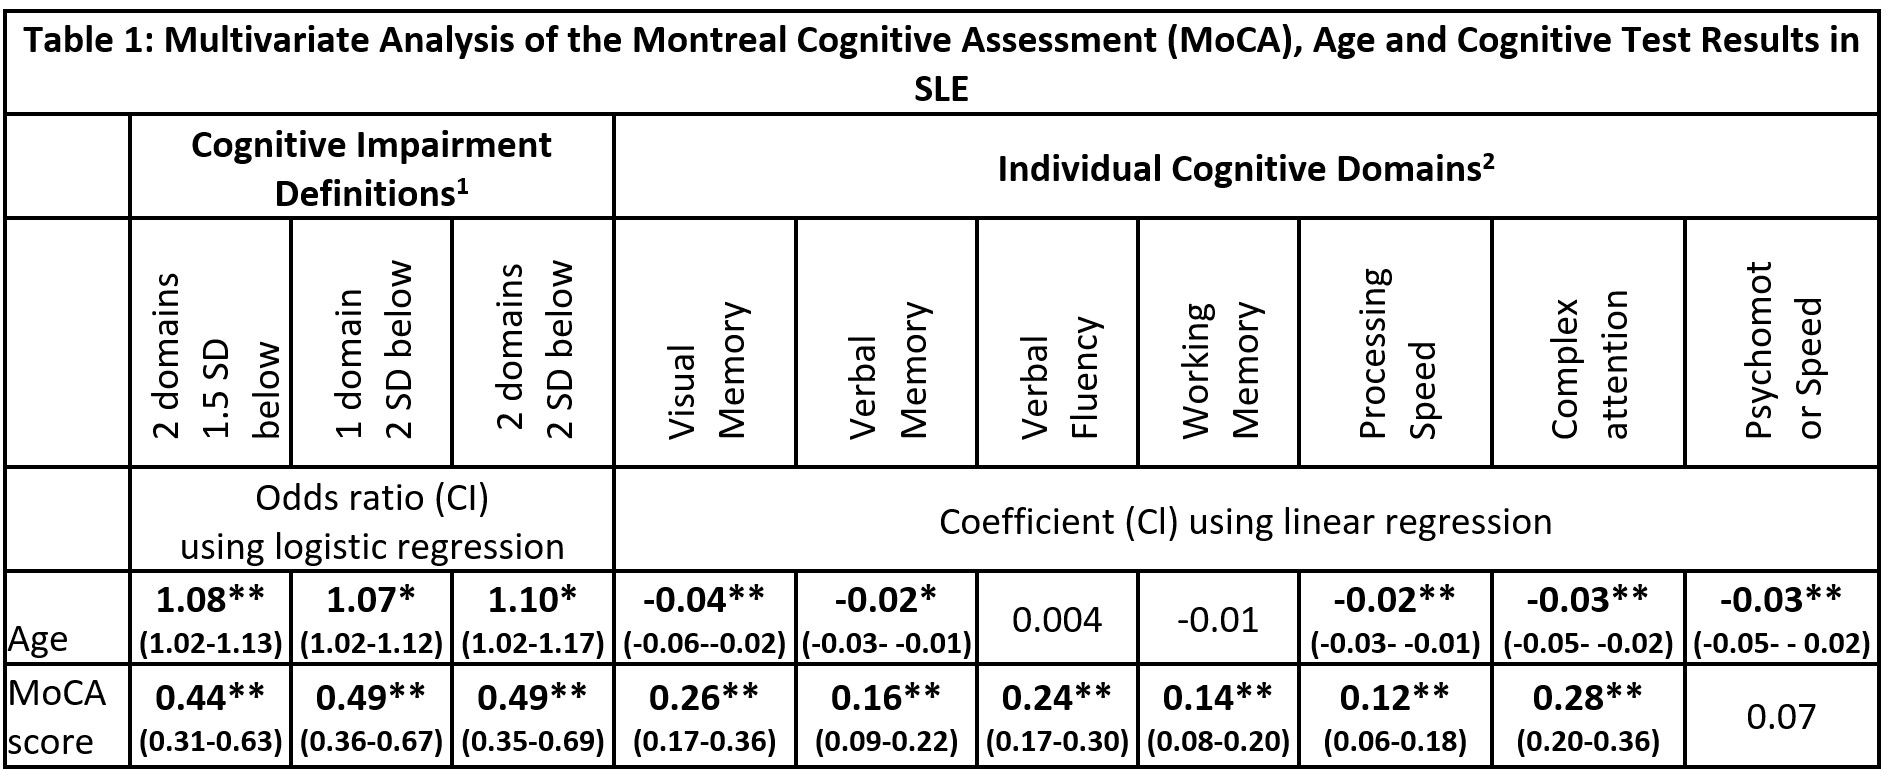 moca cognitive test scoring